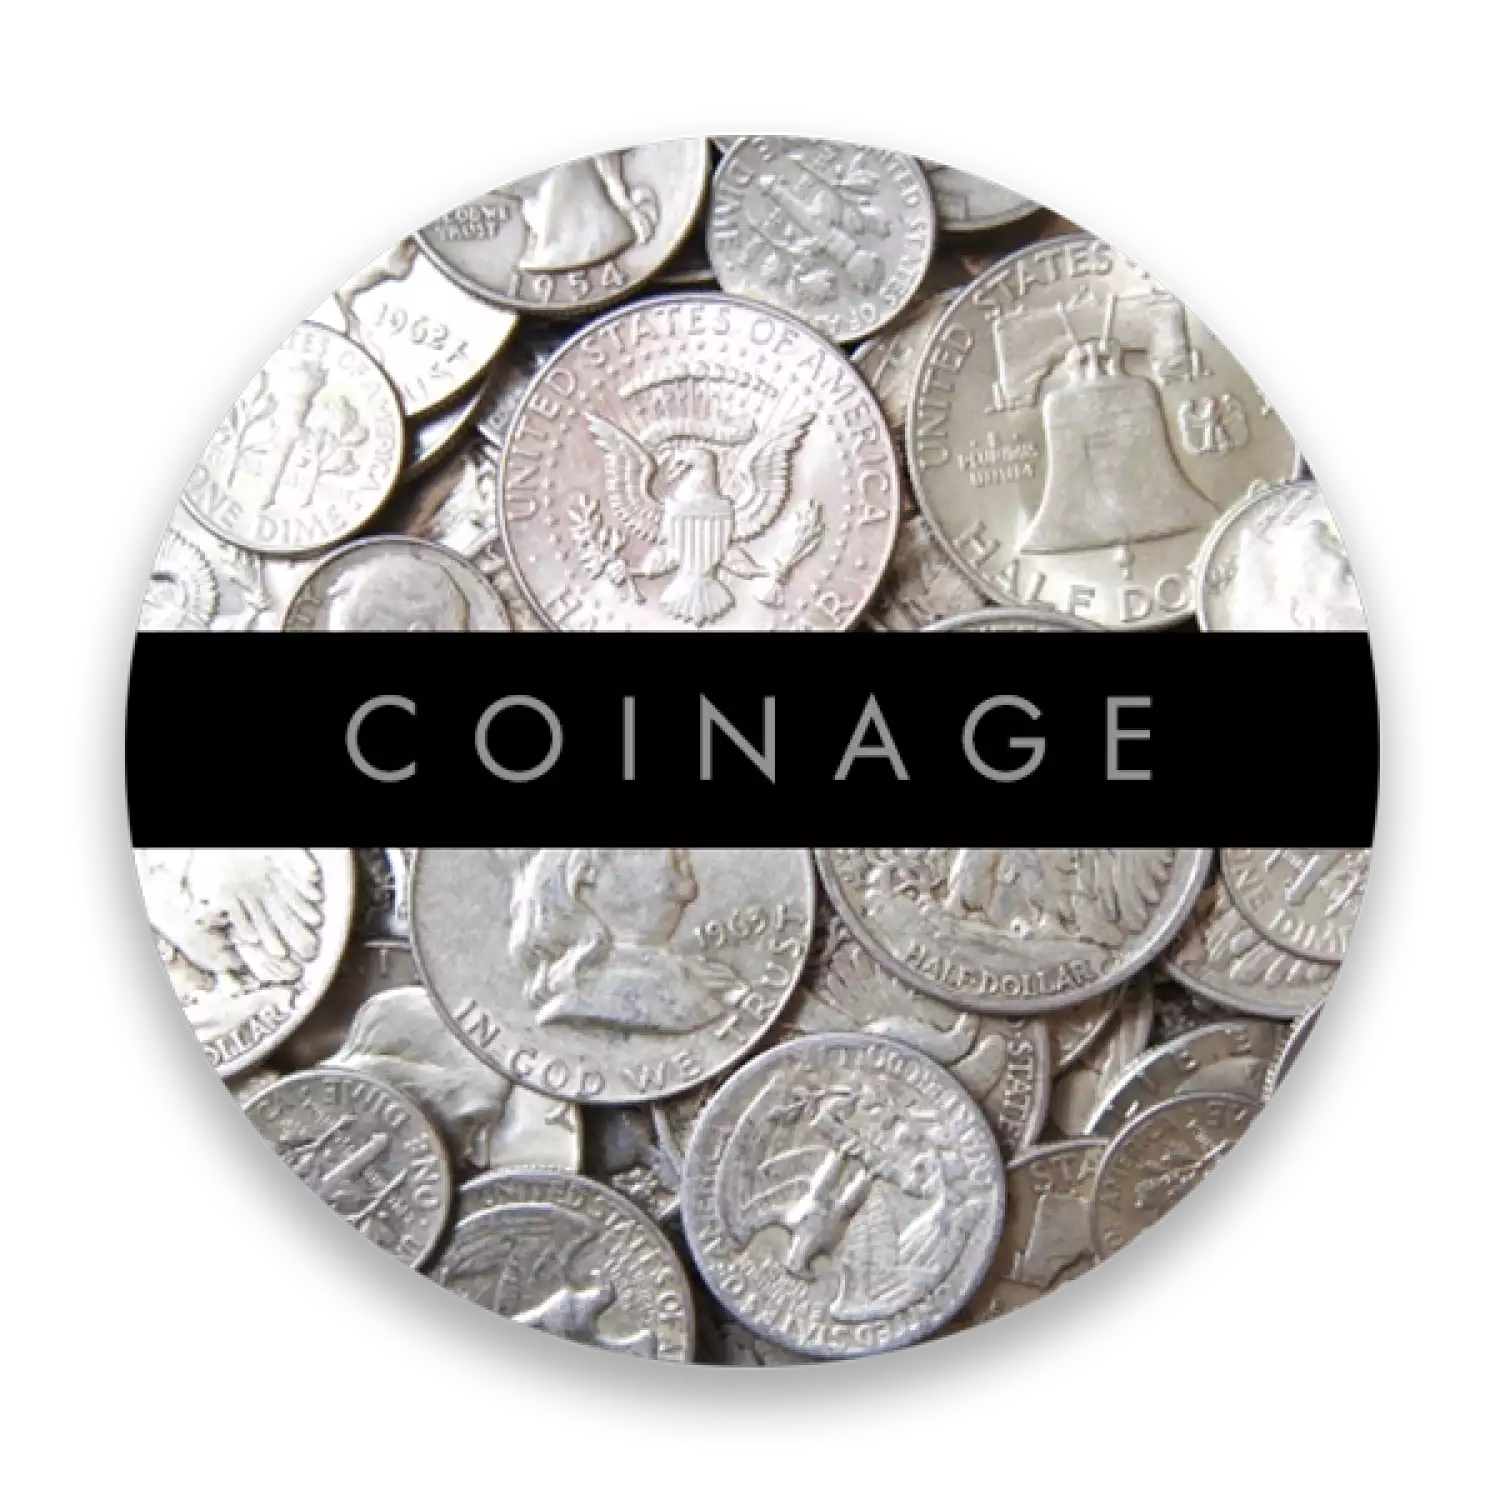 US 90% Silver Coinage - Pre 1965 - Junk Silver (2)